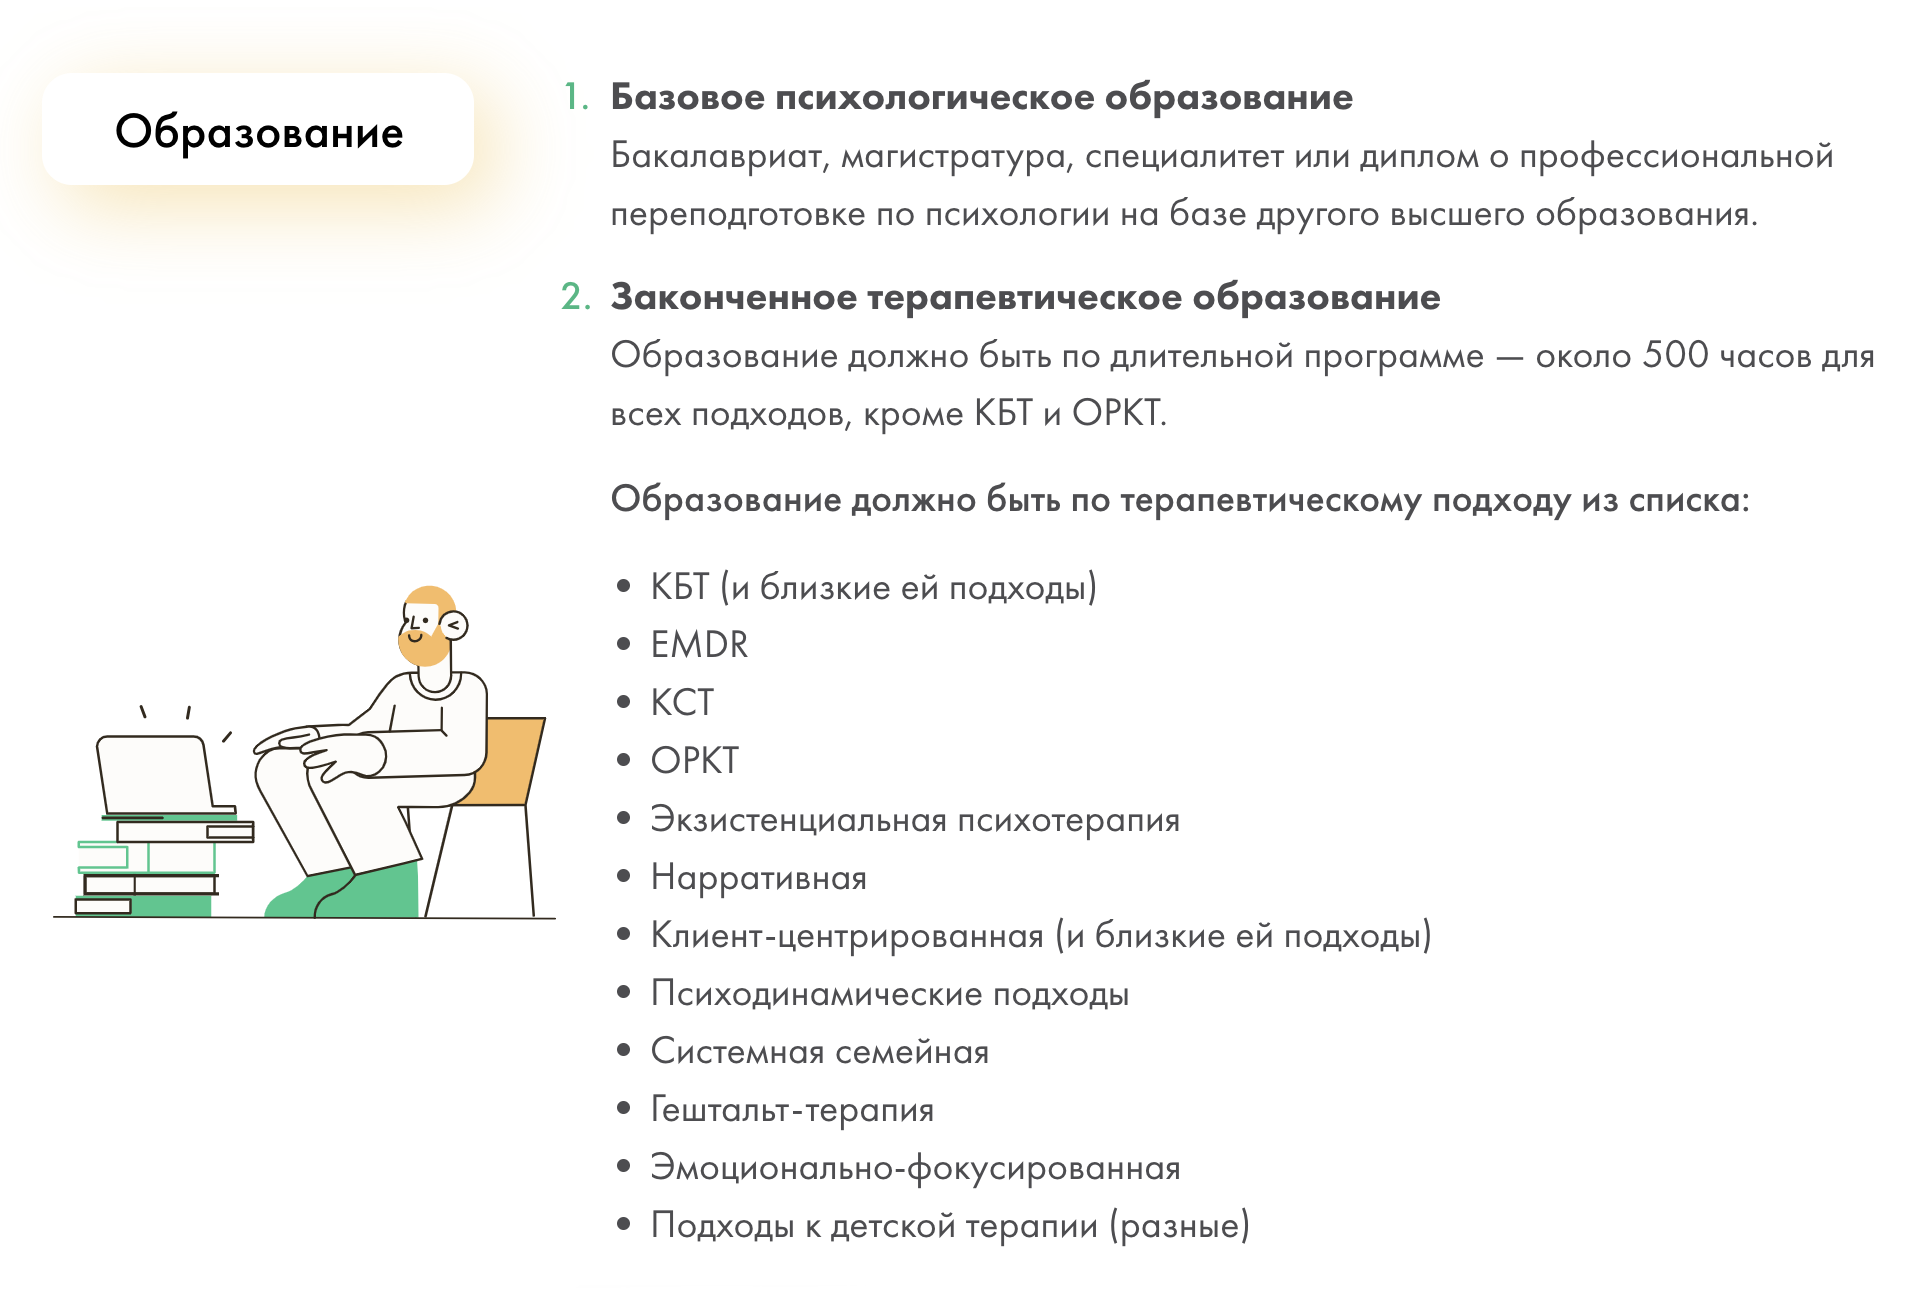 Требования к образованию психолога в сервисе «Альтер». Источник: alter.ru